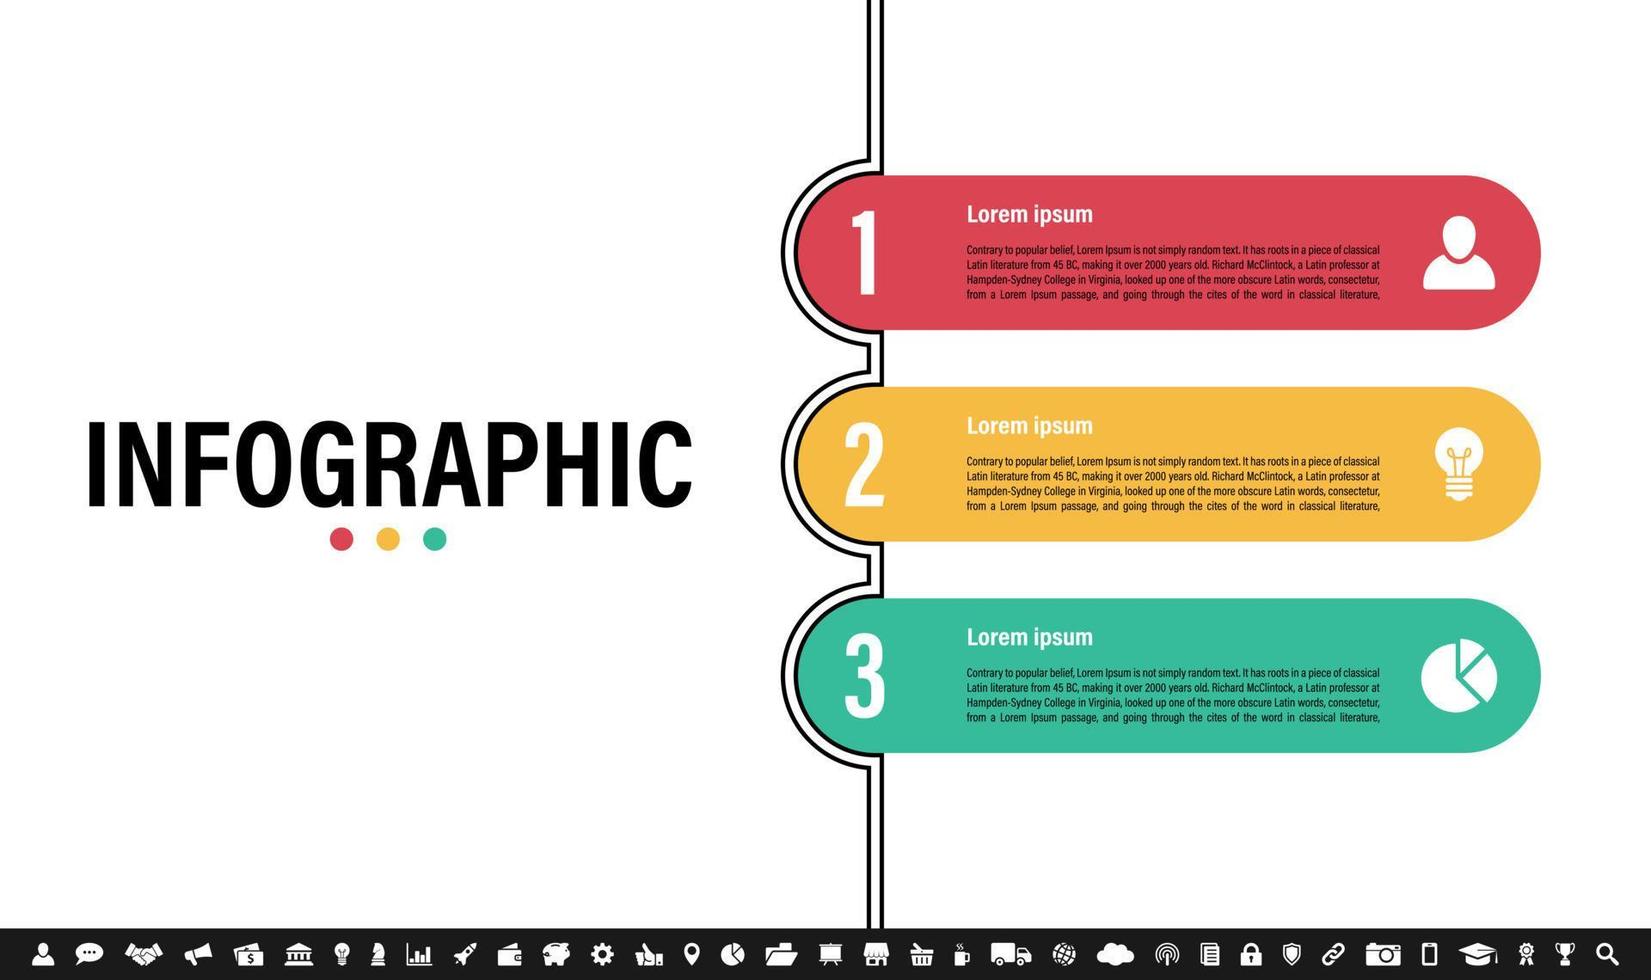 Infografik Designvorlage mit Geschäftskonzept vektor